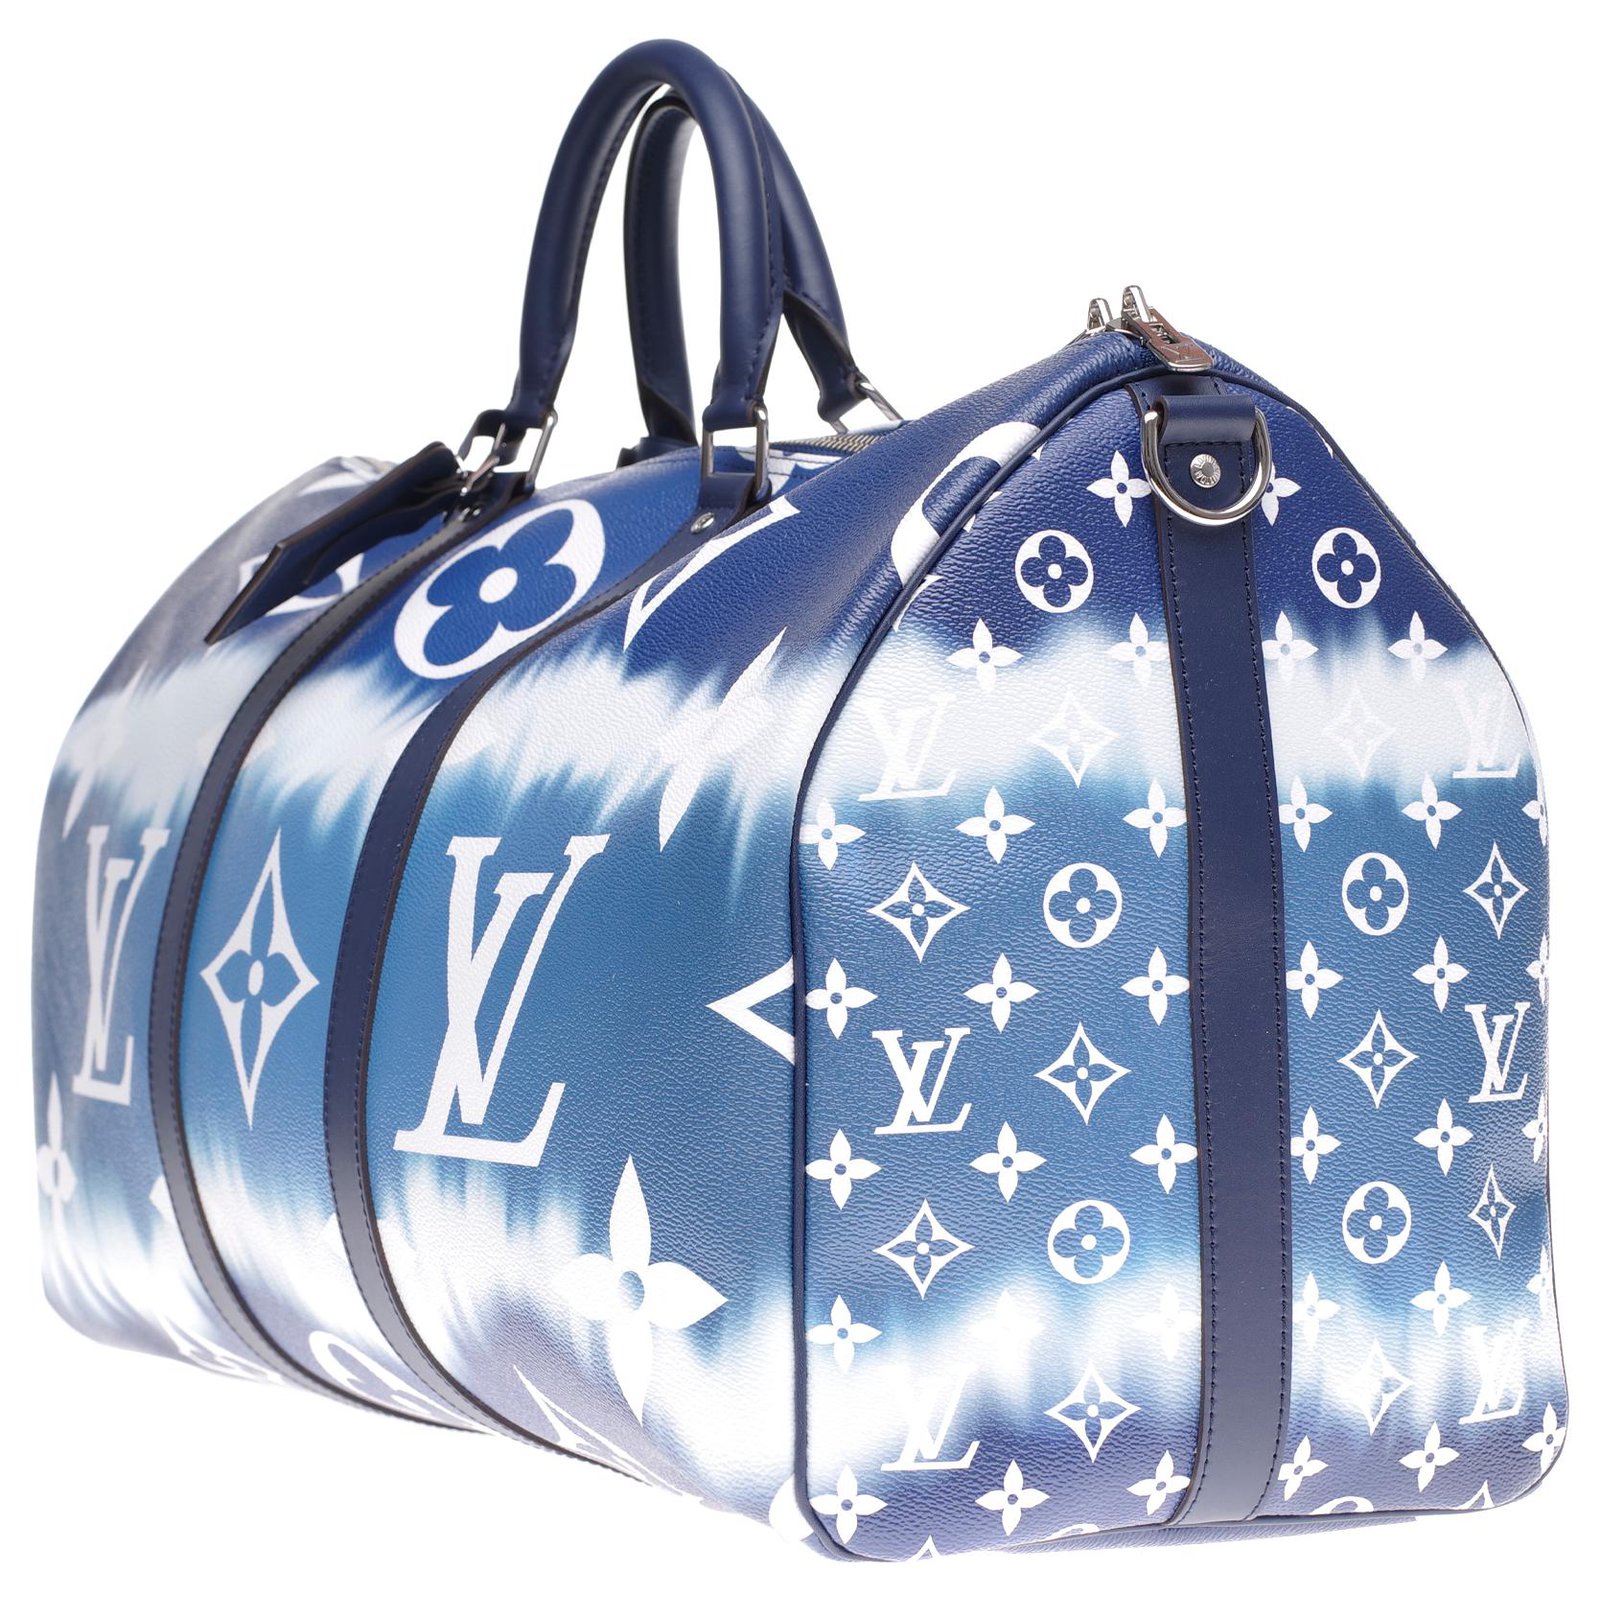 lv inspired travel bag